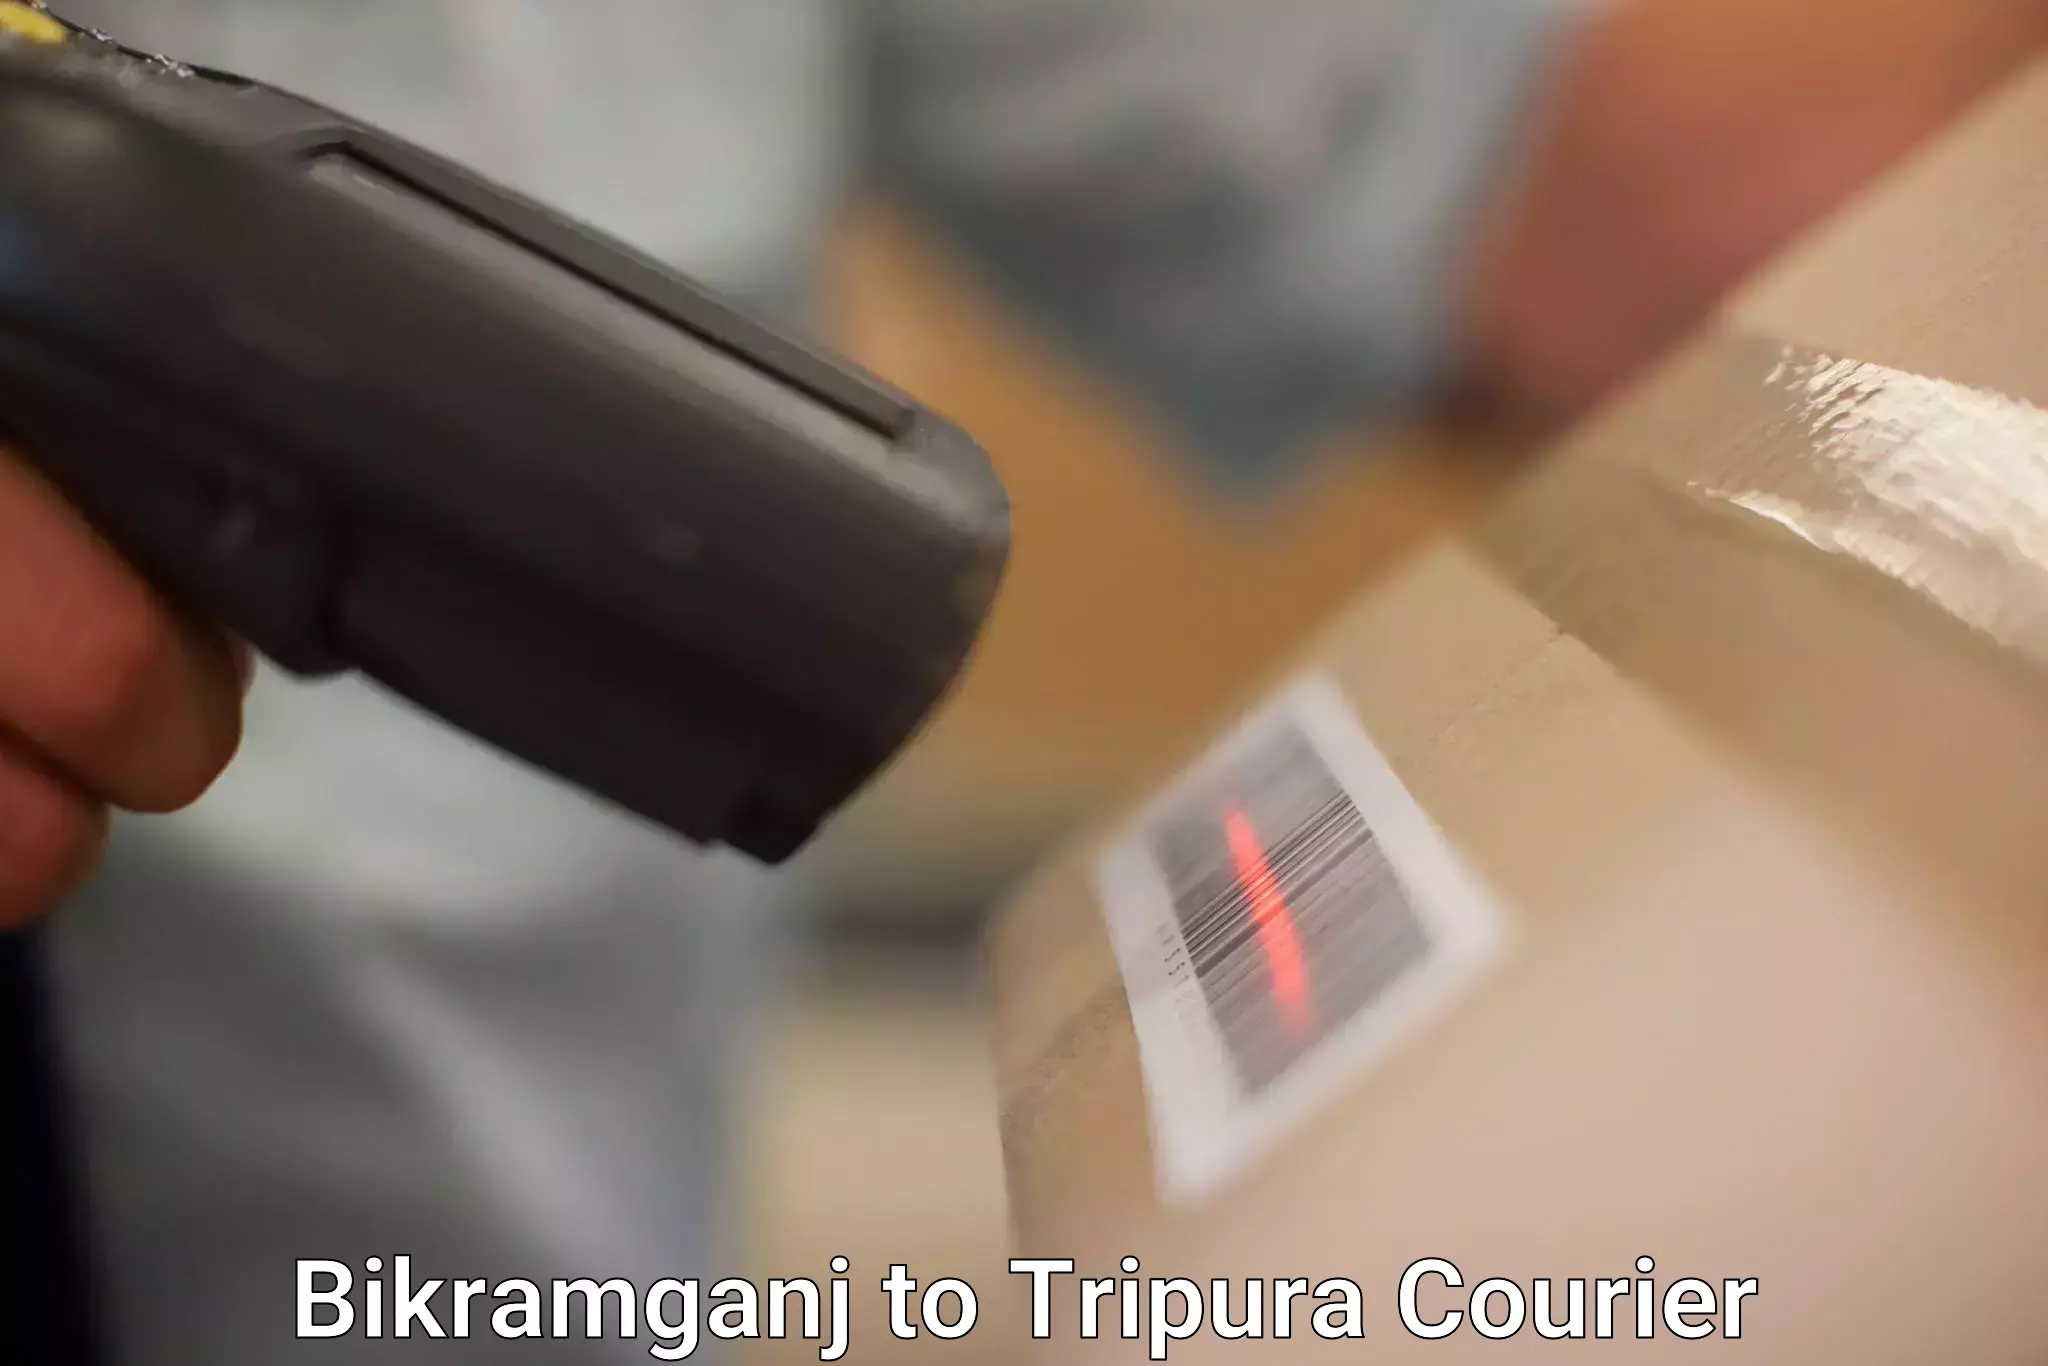 Efficient parcel delivery Bikramganj to Kailashahar